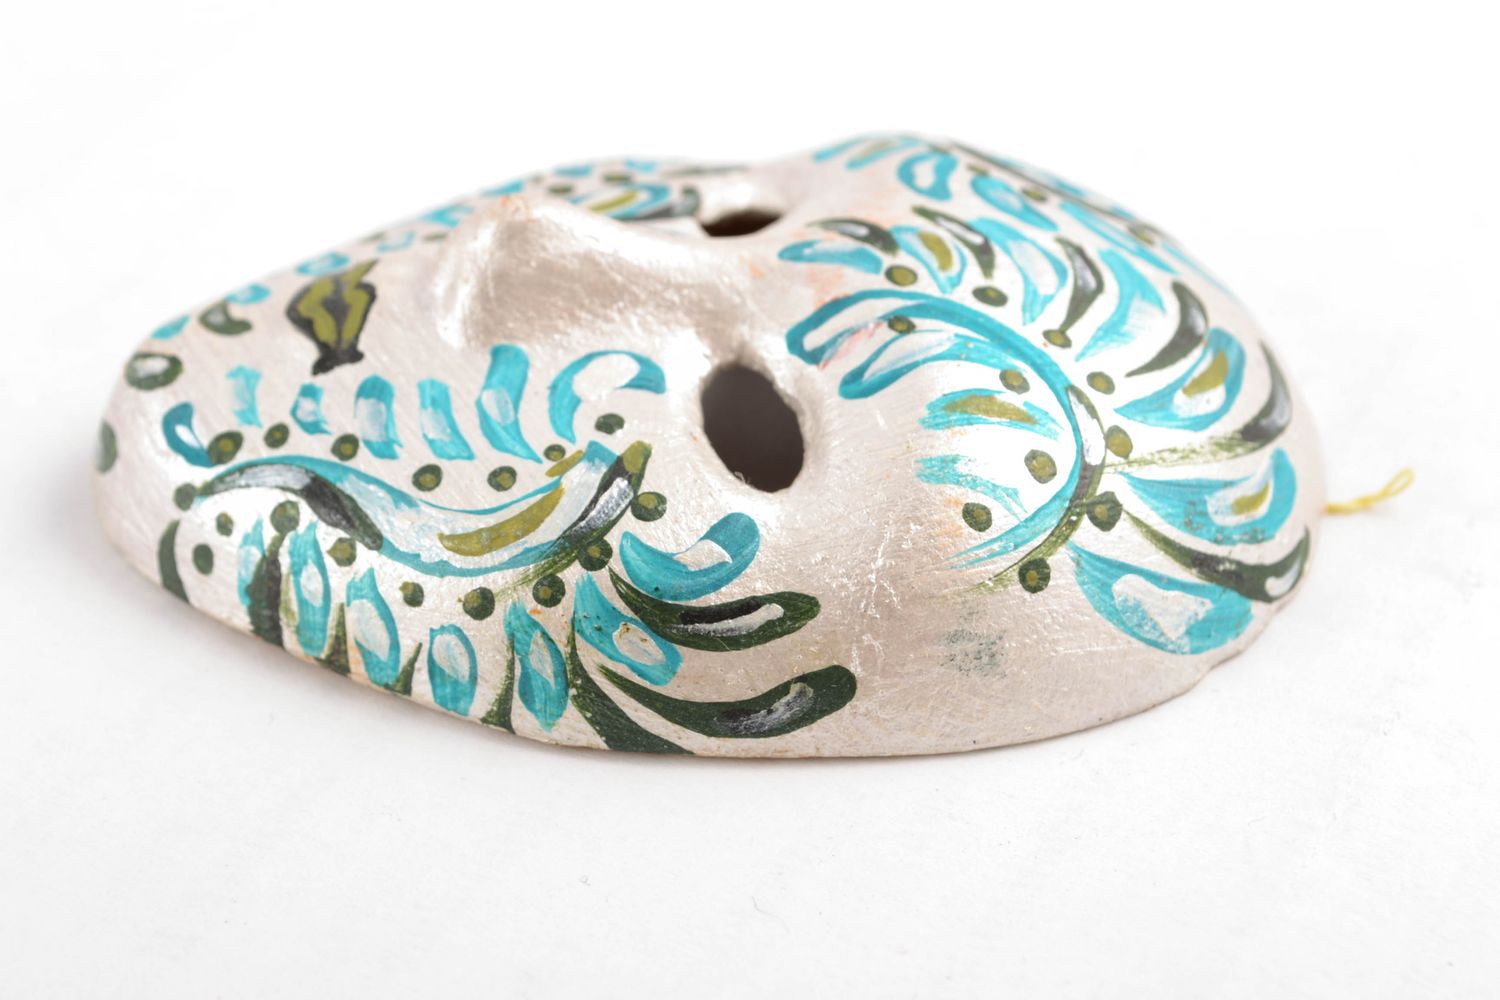 Maschera artigianale fatta a mano in ceramica souvenir da appendere al muro foto 3